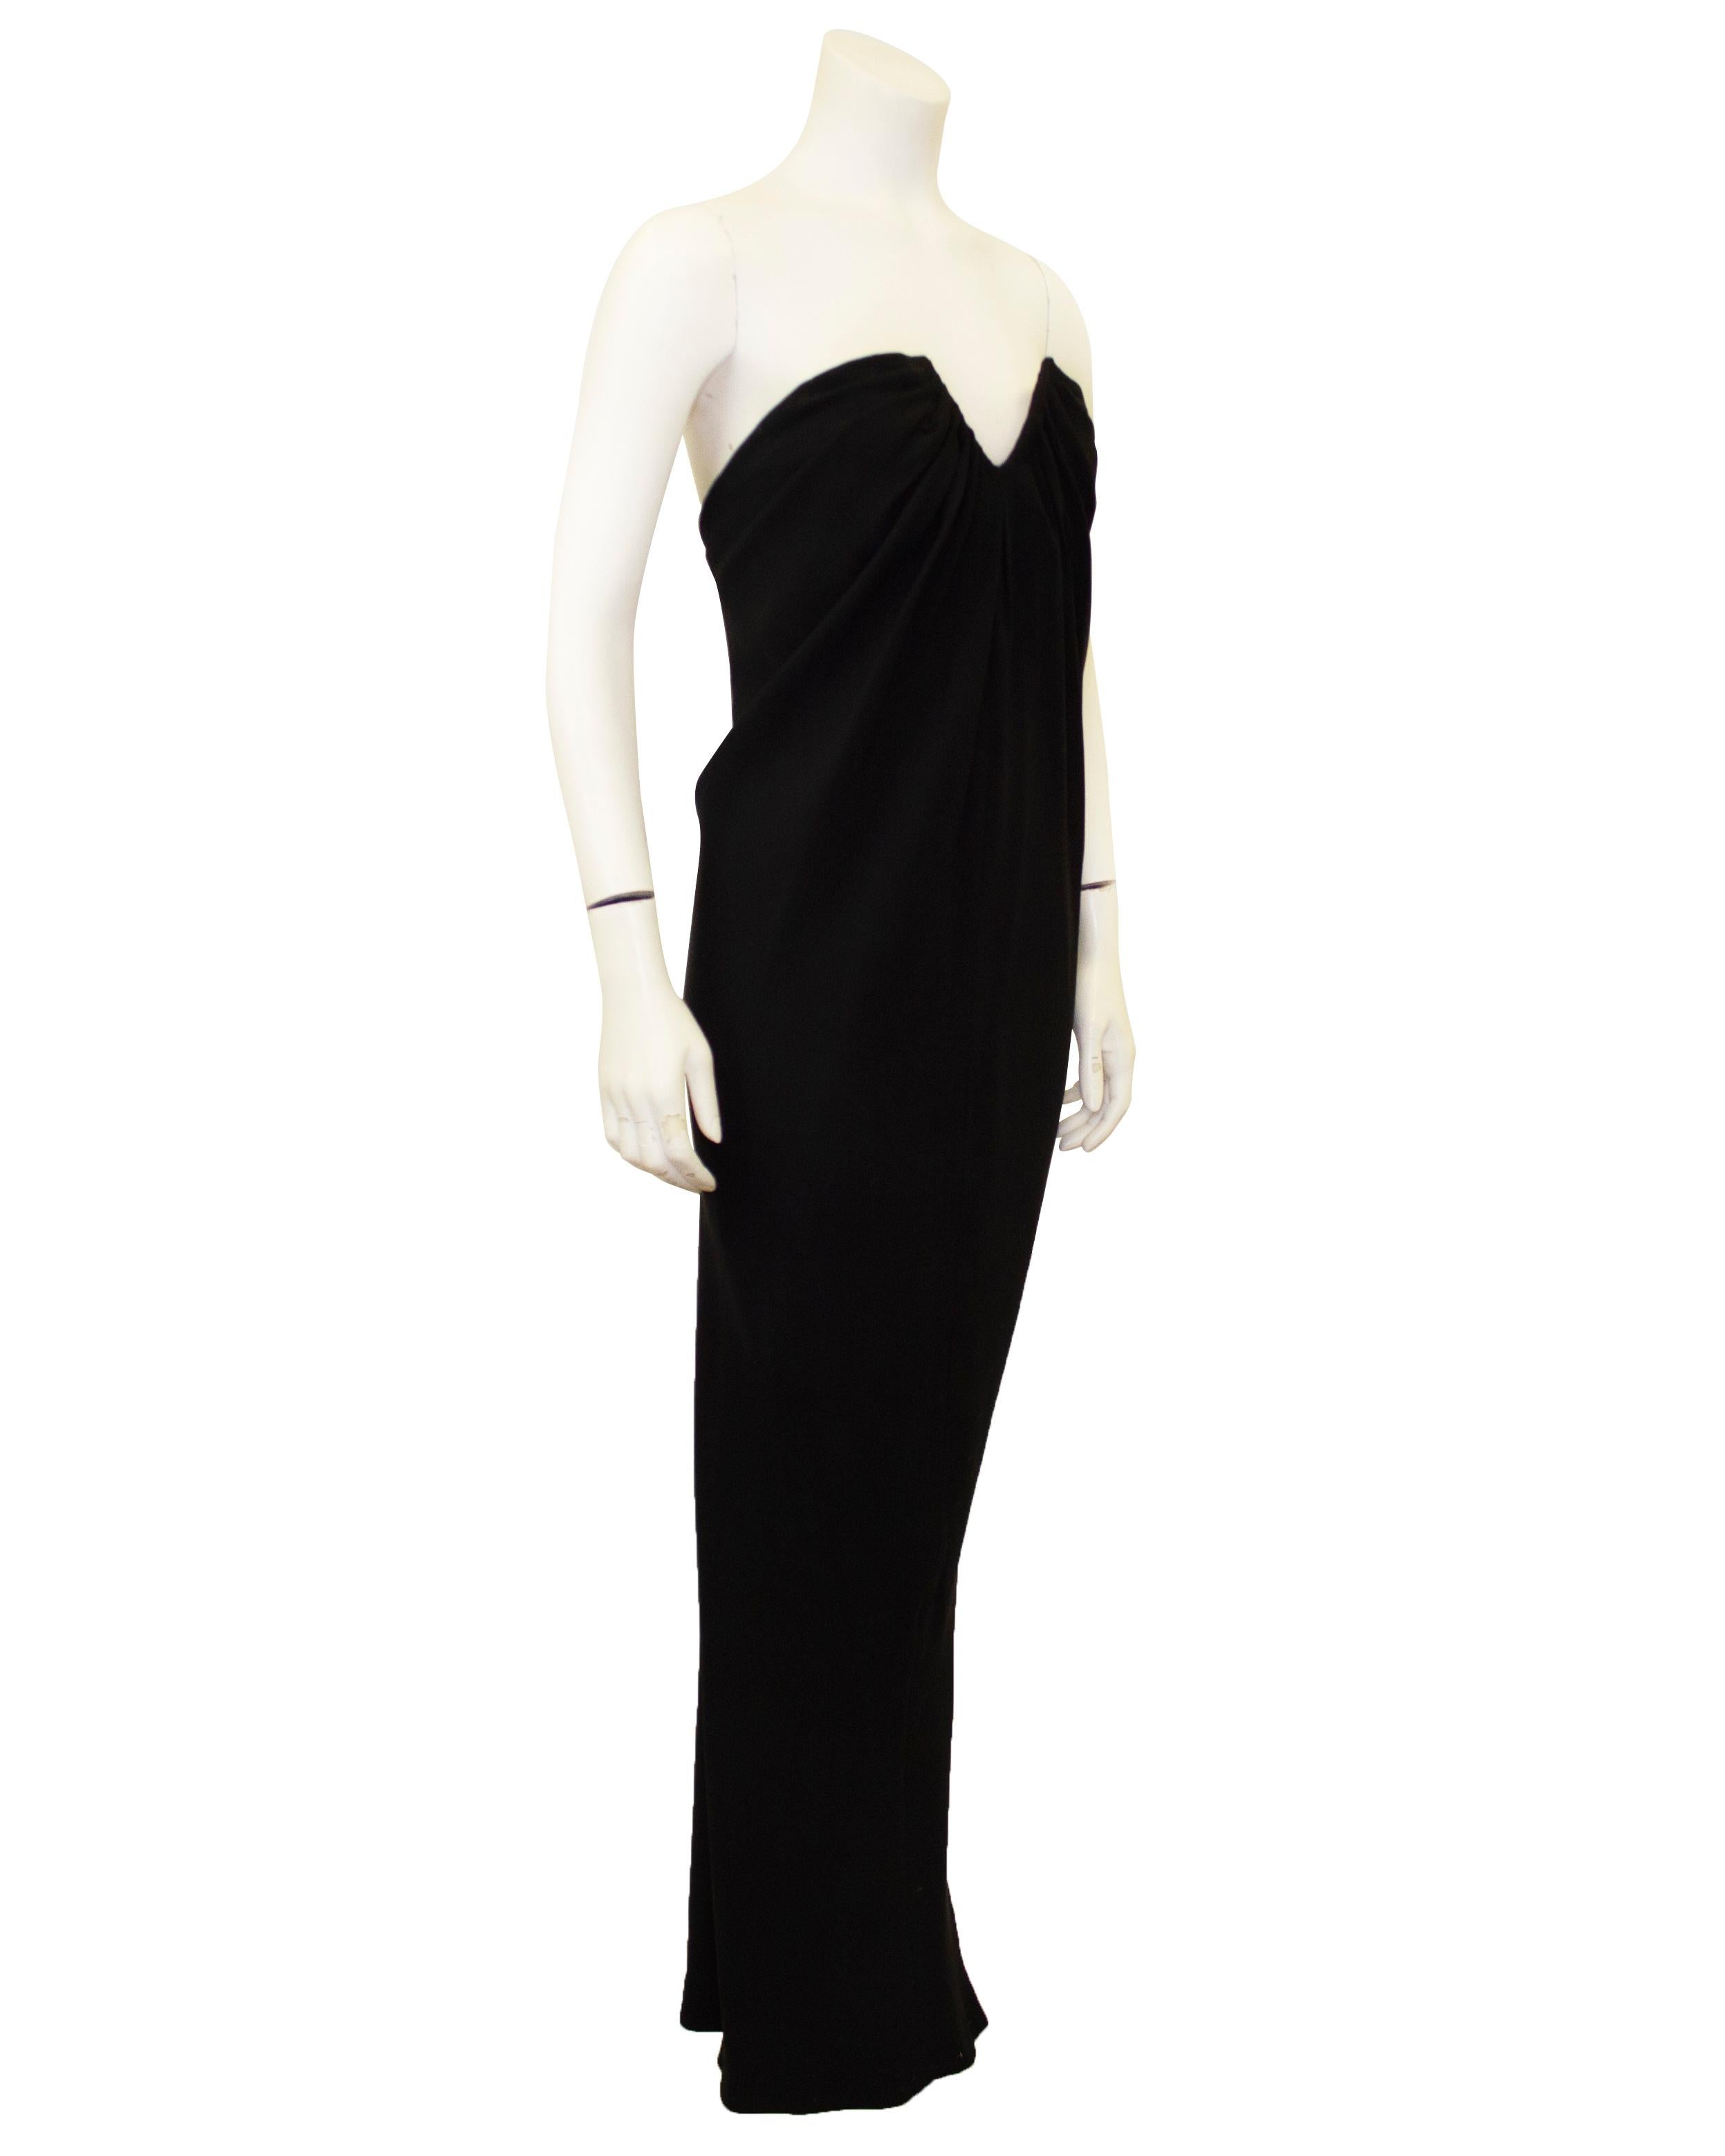 Elegantes und sexy schwarzes Seidenkleid von Carolyne Roehm aus den 1980er Jahren. Trägerlos mit u-förmigem Ausschnitt an der Büste. Der Stoff ist rund um den Ausschnitt gerafft und fällt nach außen. Der Rock umspielt den Körper und verjüngt sich